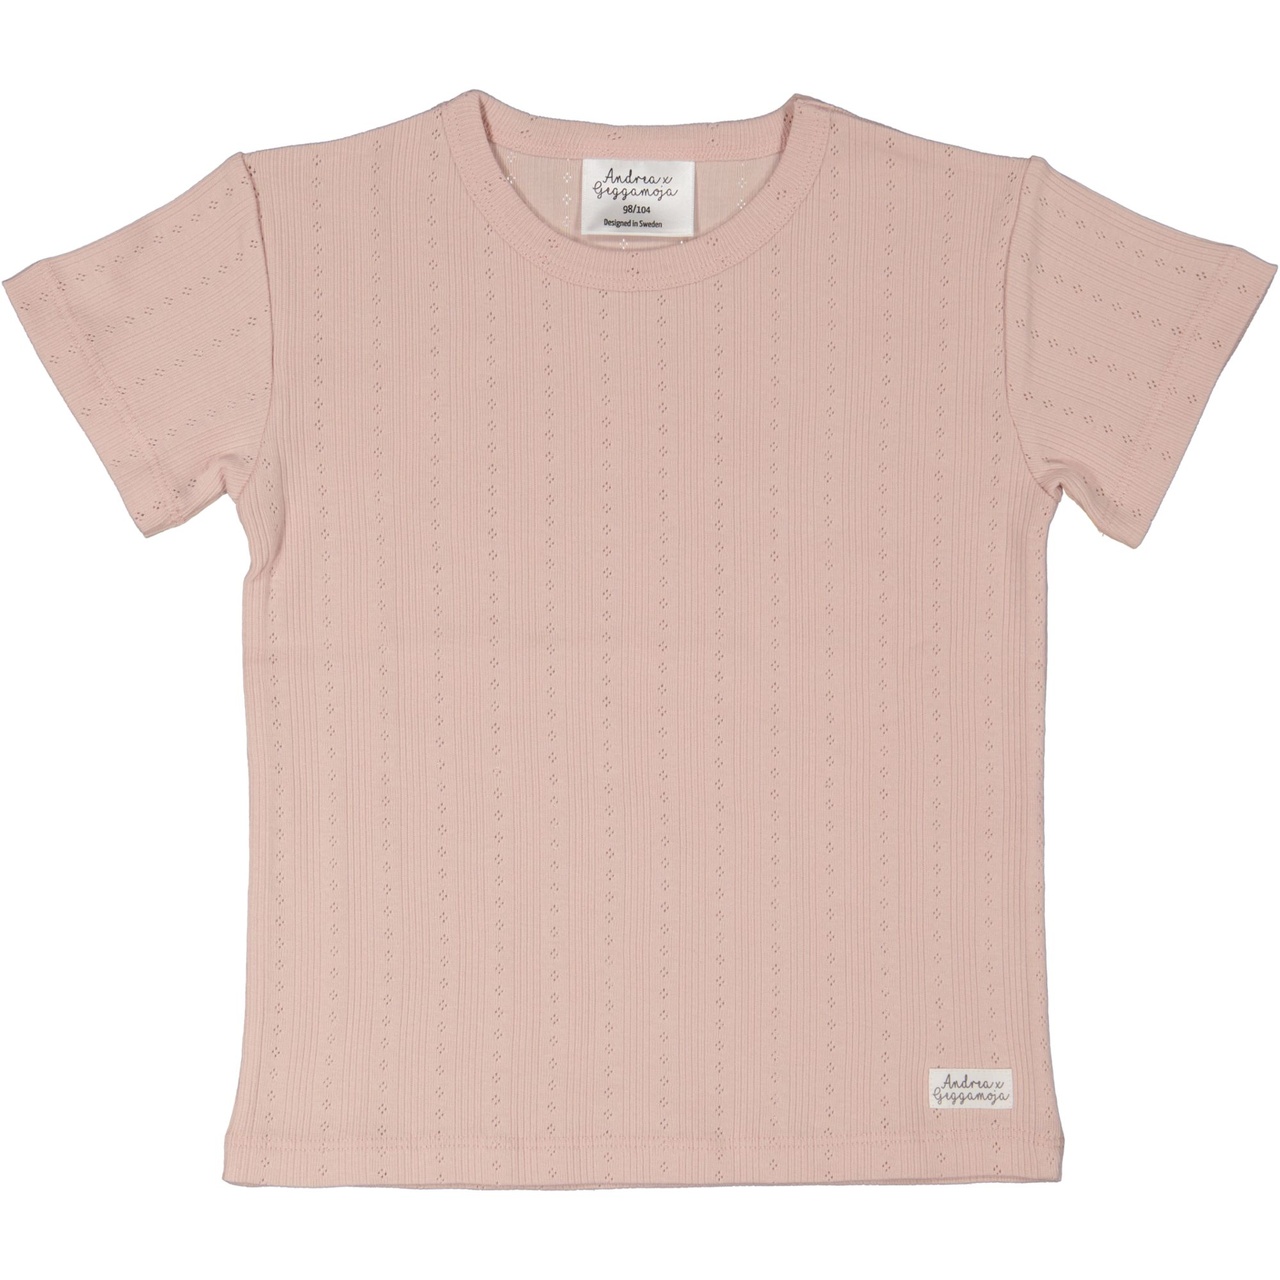 T-shirt Pink Rose  98/104